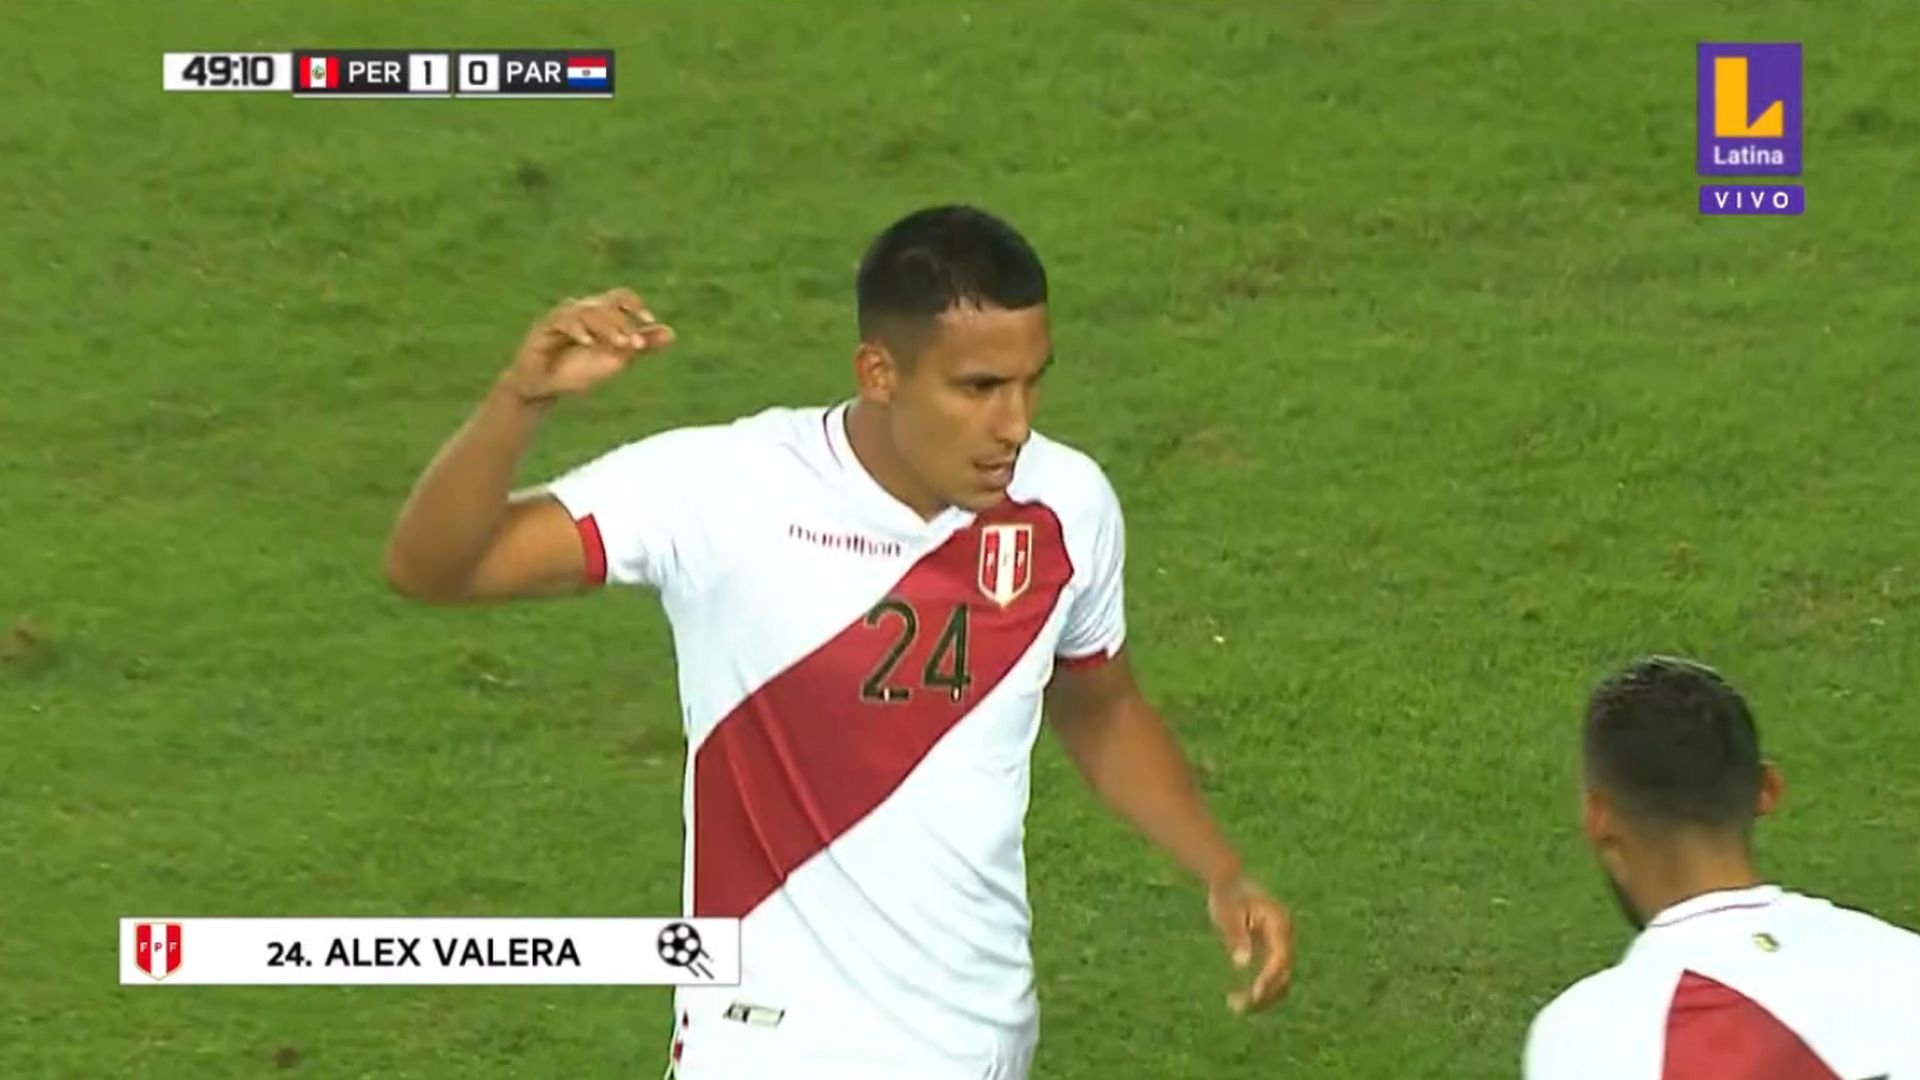 Golazo de Alex Valera para 1-0 de Perú ante Paraguay, amistoso en el Estadio Monumental